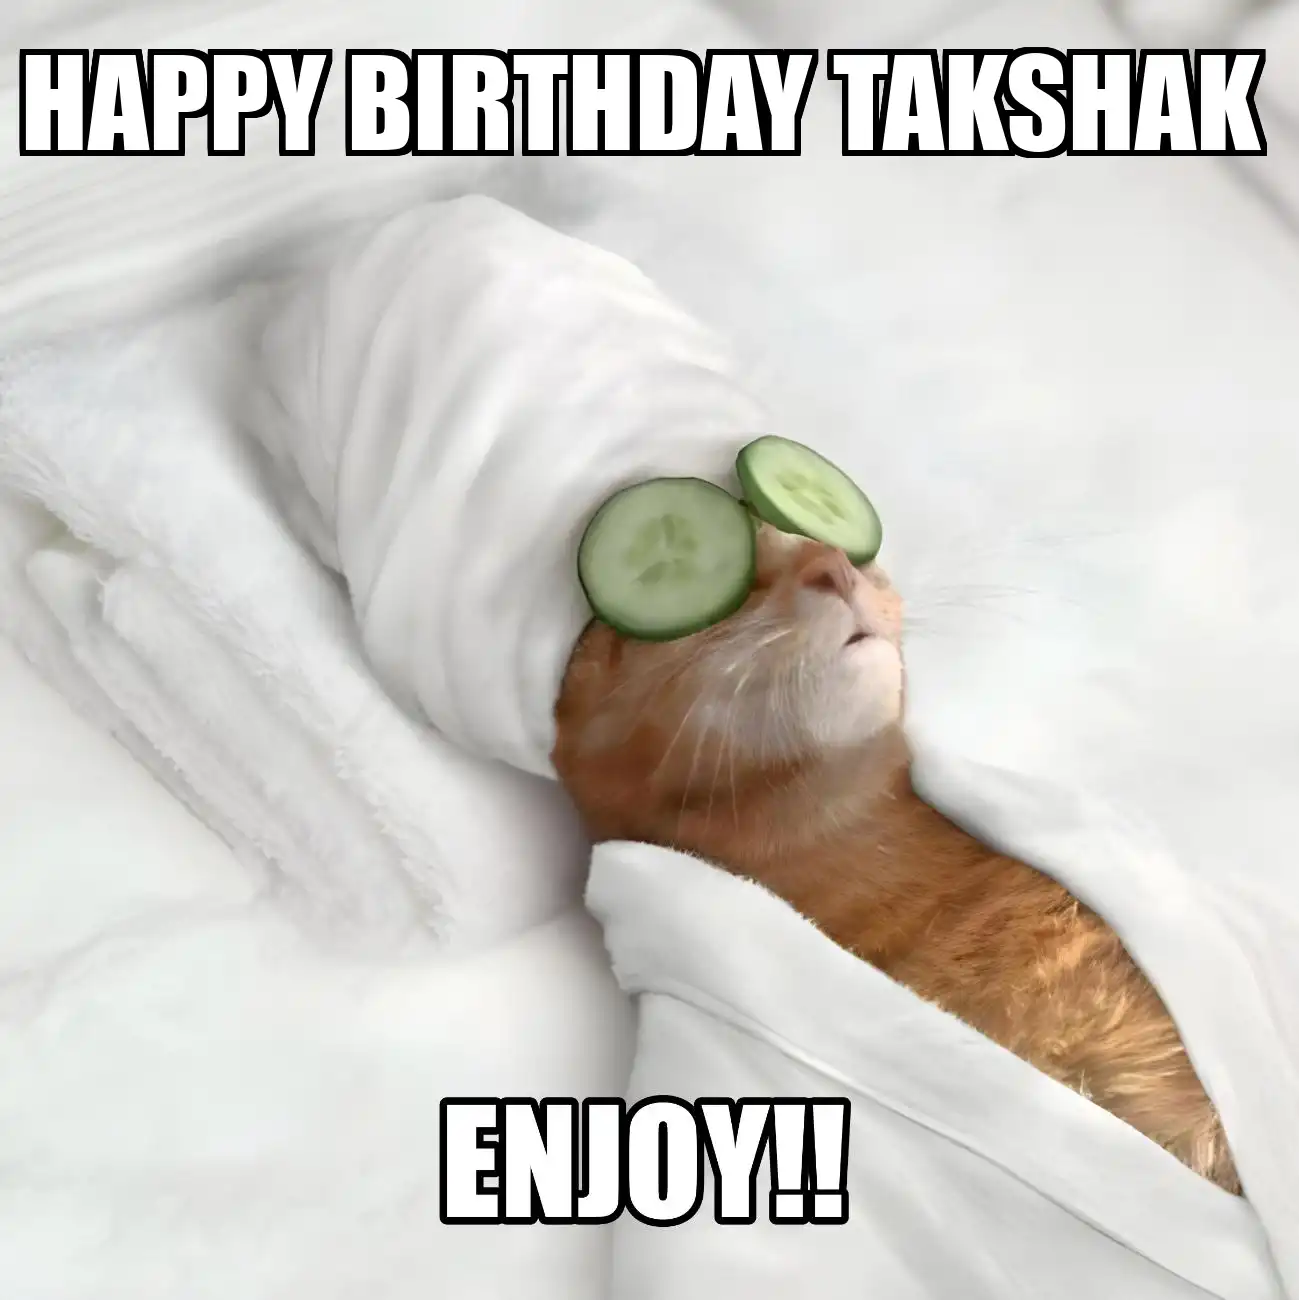 Happy Birthday Takshak Enjoy Cat Meme